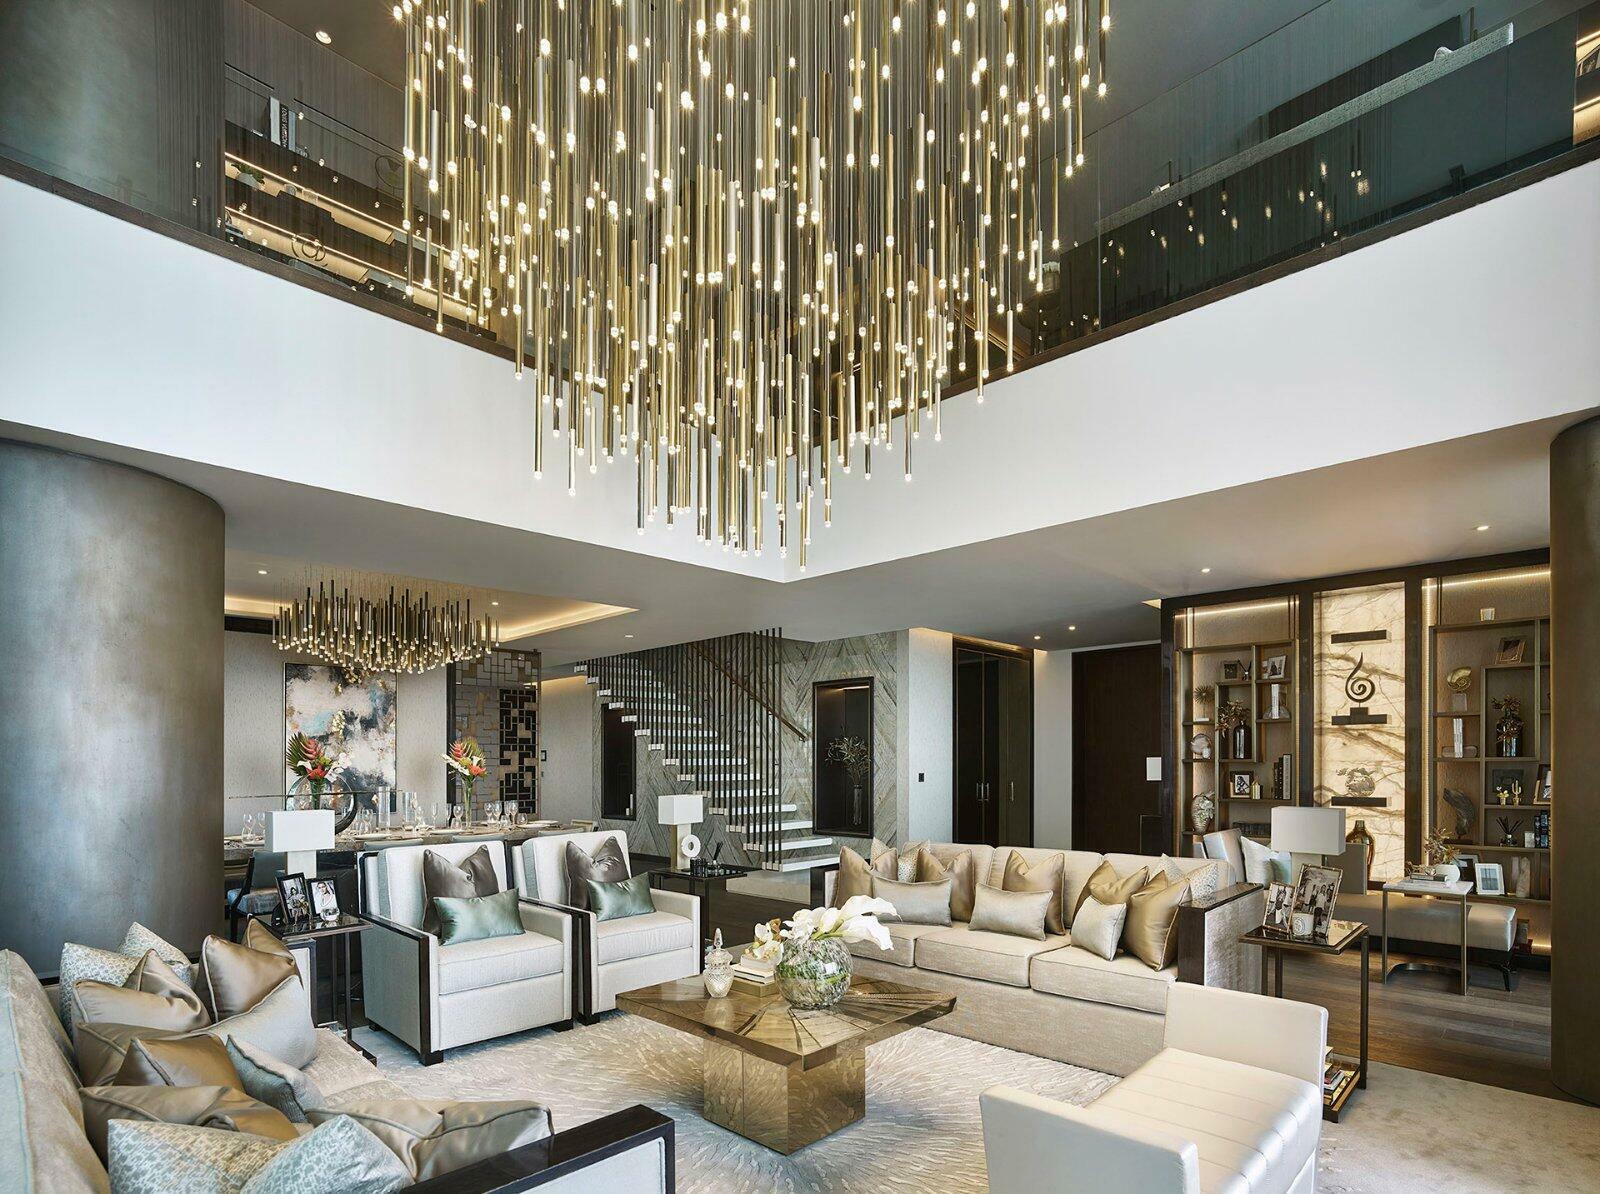 Modern Luxury Interior Design By Elicyon, Design Authority